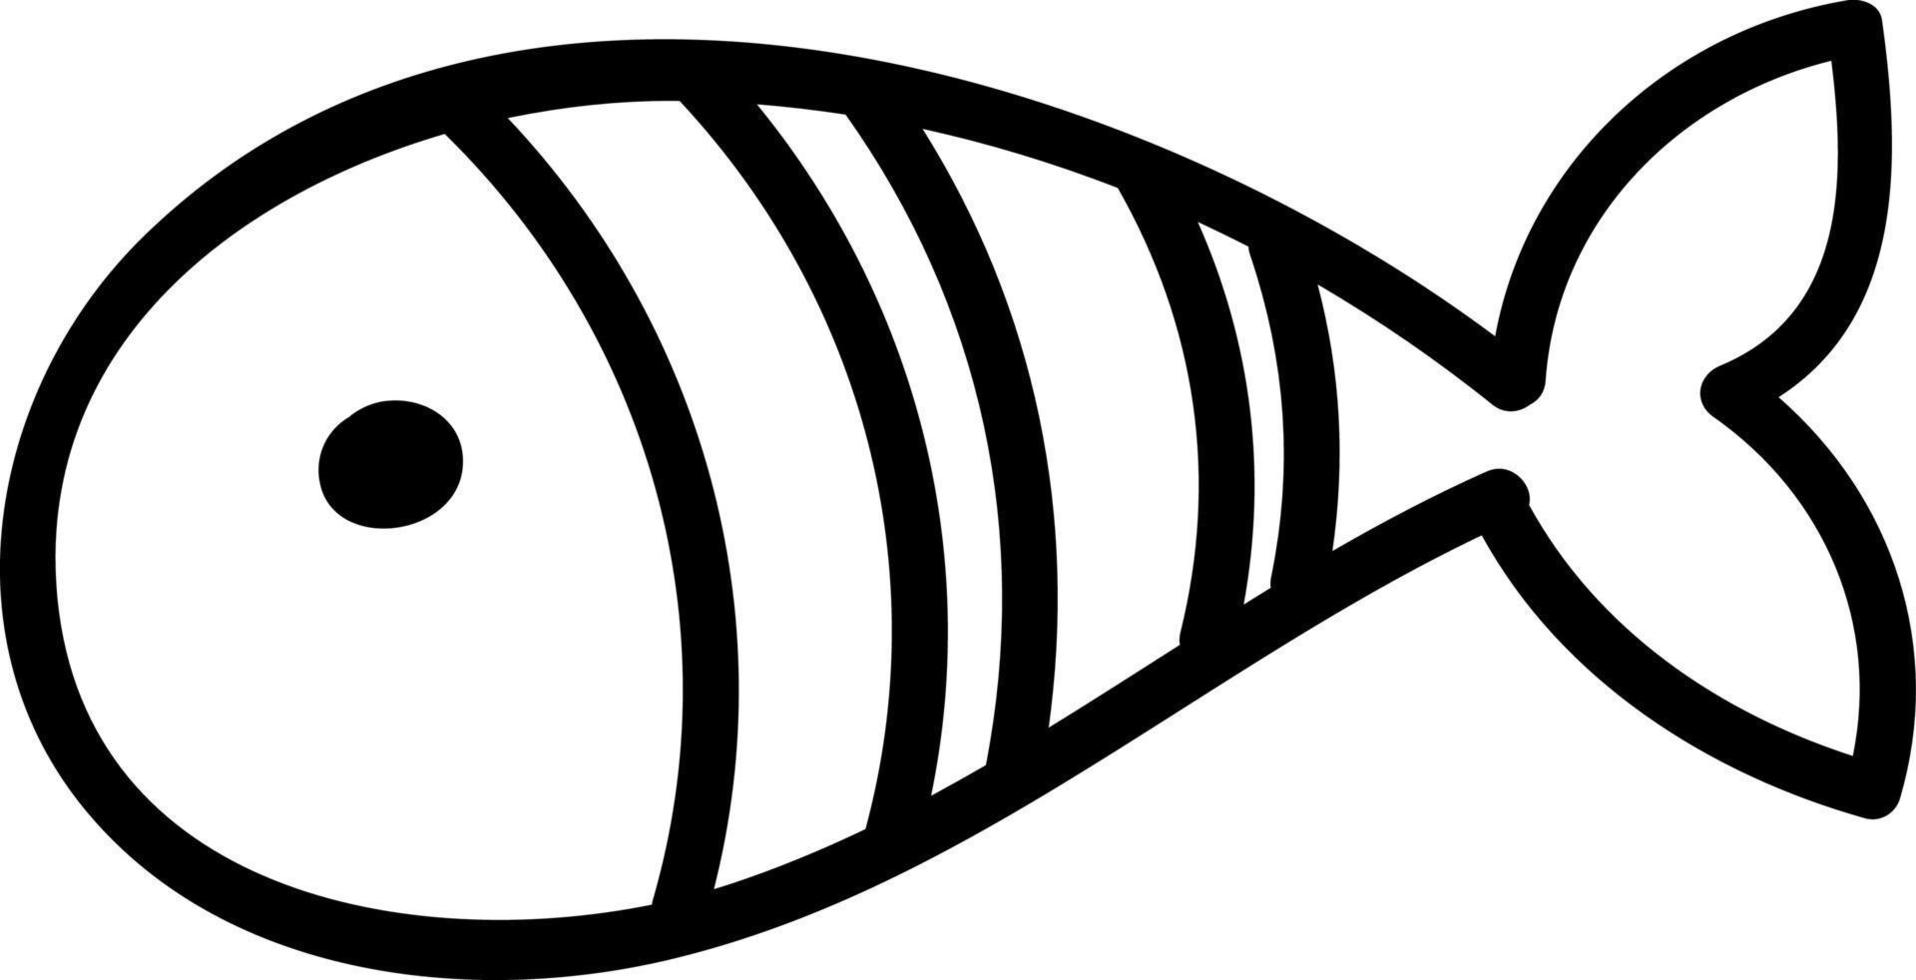 poisson blanc avec deux bandes et queue pointue, illustration, vecteur sur fond blanc.